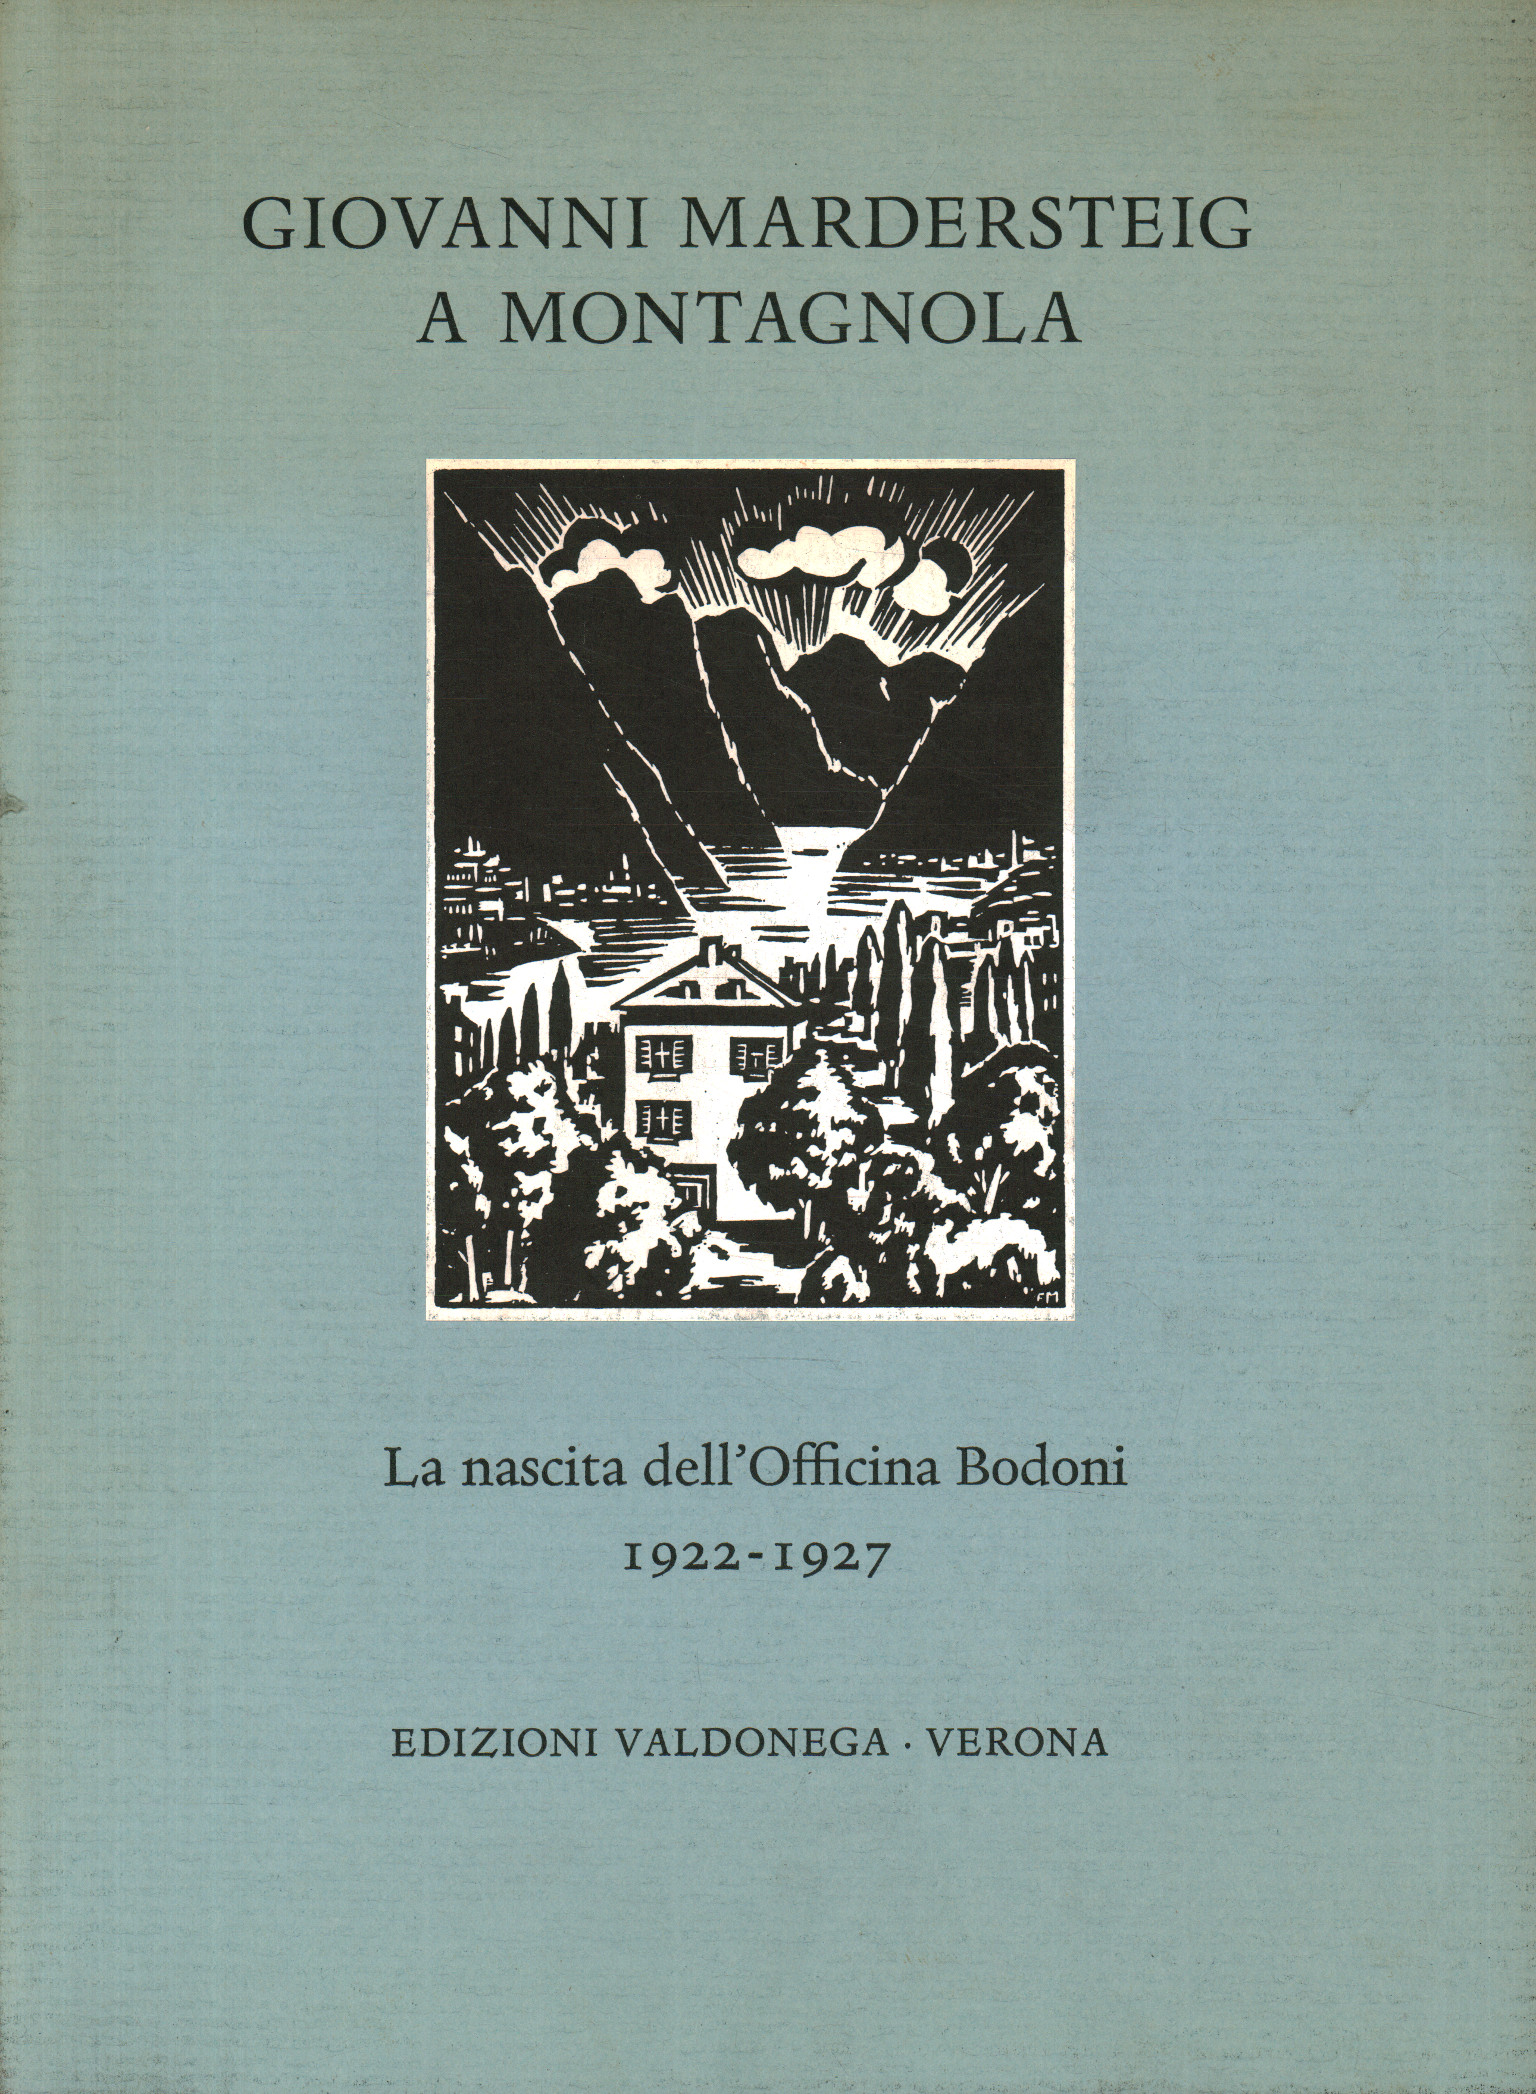 Giovanni Mardersteig in Montagnola